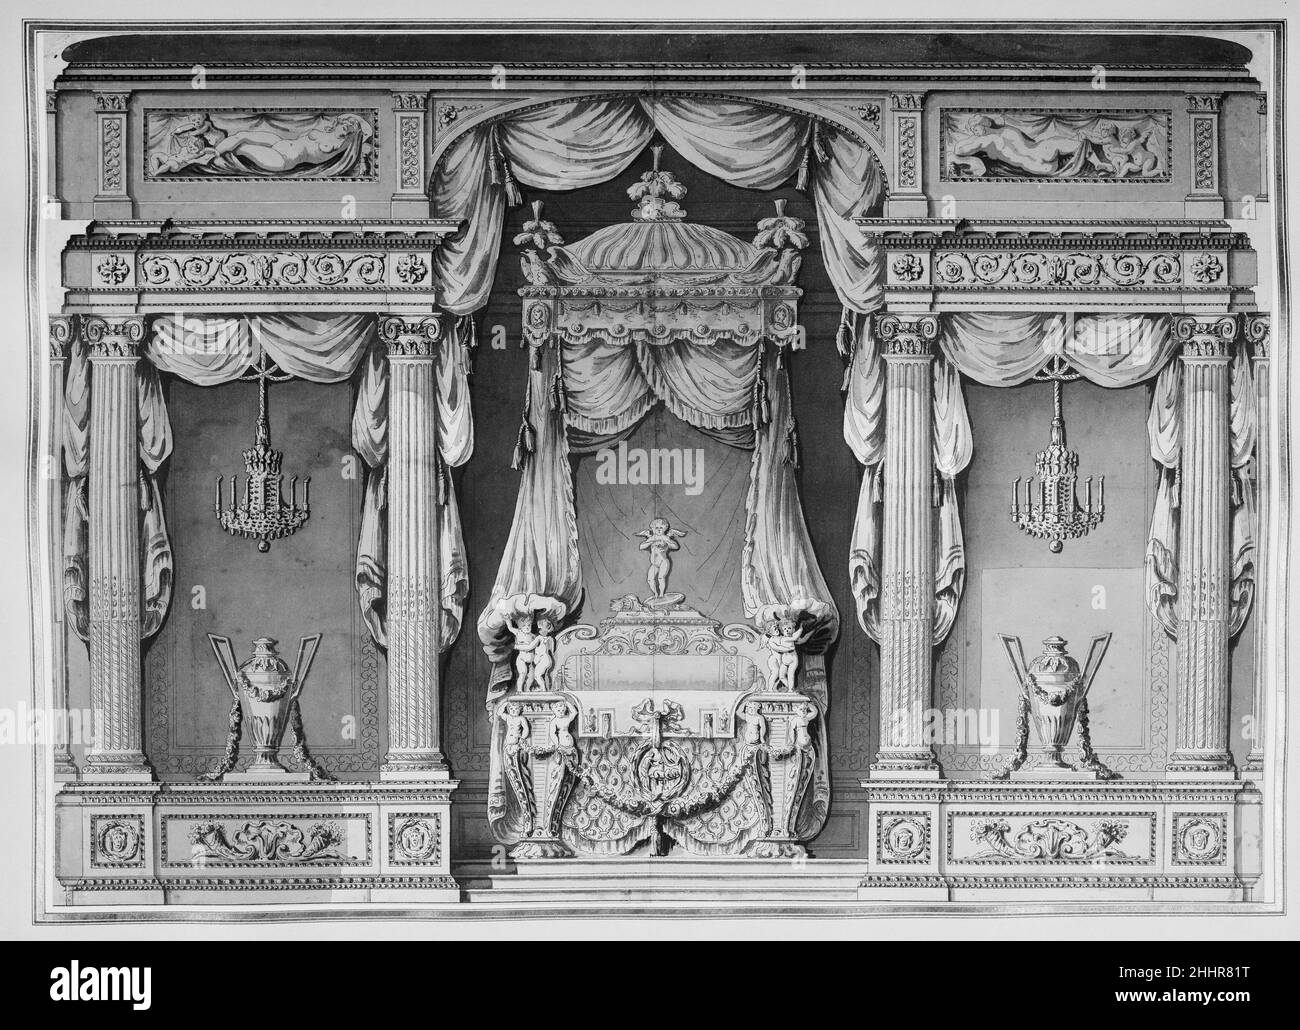 Conception pour un lit à baldaquin dans une alcôve ca.1770–90 Anonyme,  Français, 18th Century French ce dessin montre un dessin pour un grand lit  à baldaquin, placé dans une alcôve néoclassique.Ce type